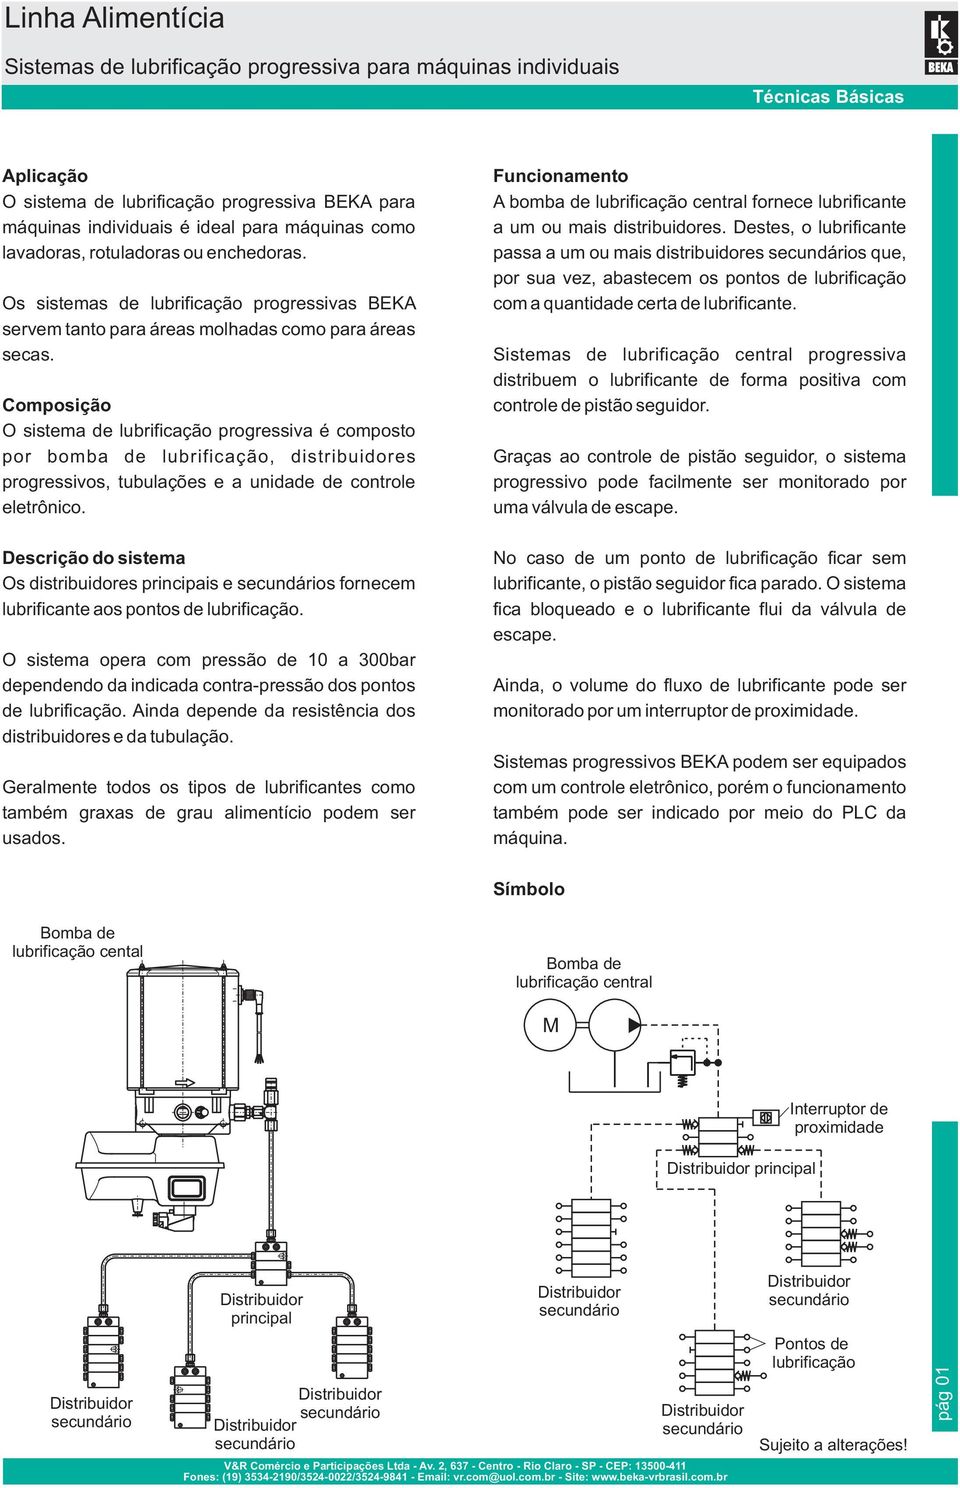 Composição O sistema de lubrificação progressiva é composto por bomba de lubrificação, distribuidores progressivos, tubulações e a unidade de controle eletrônico.